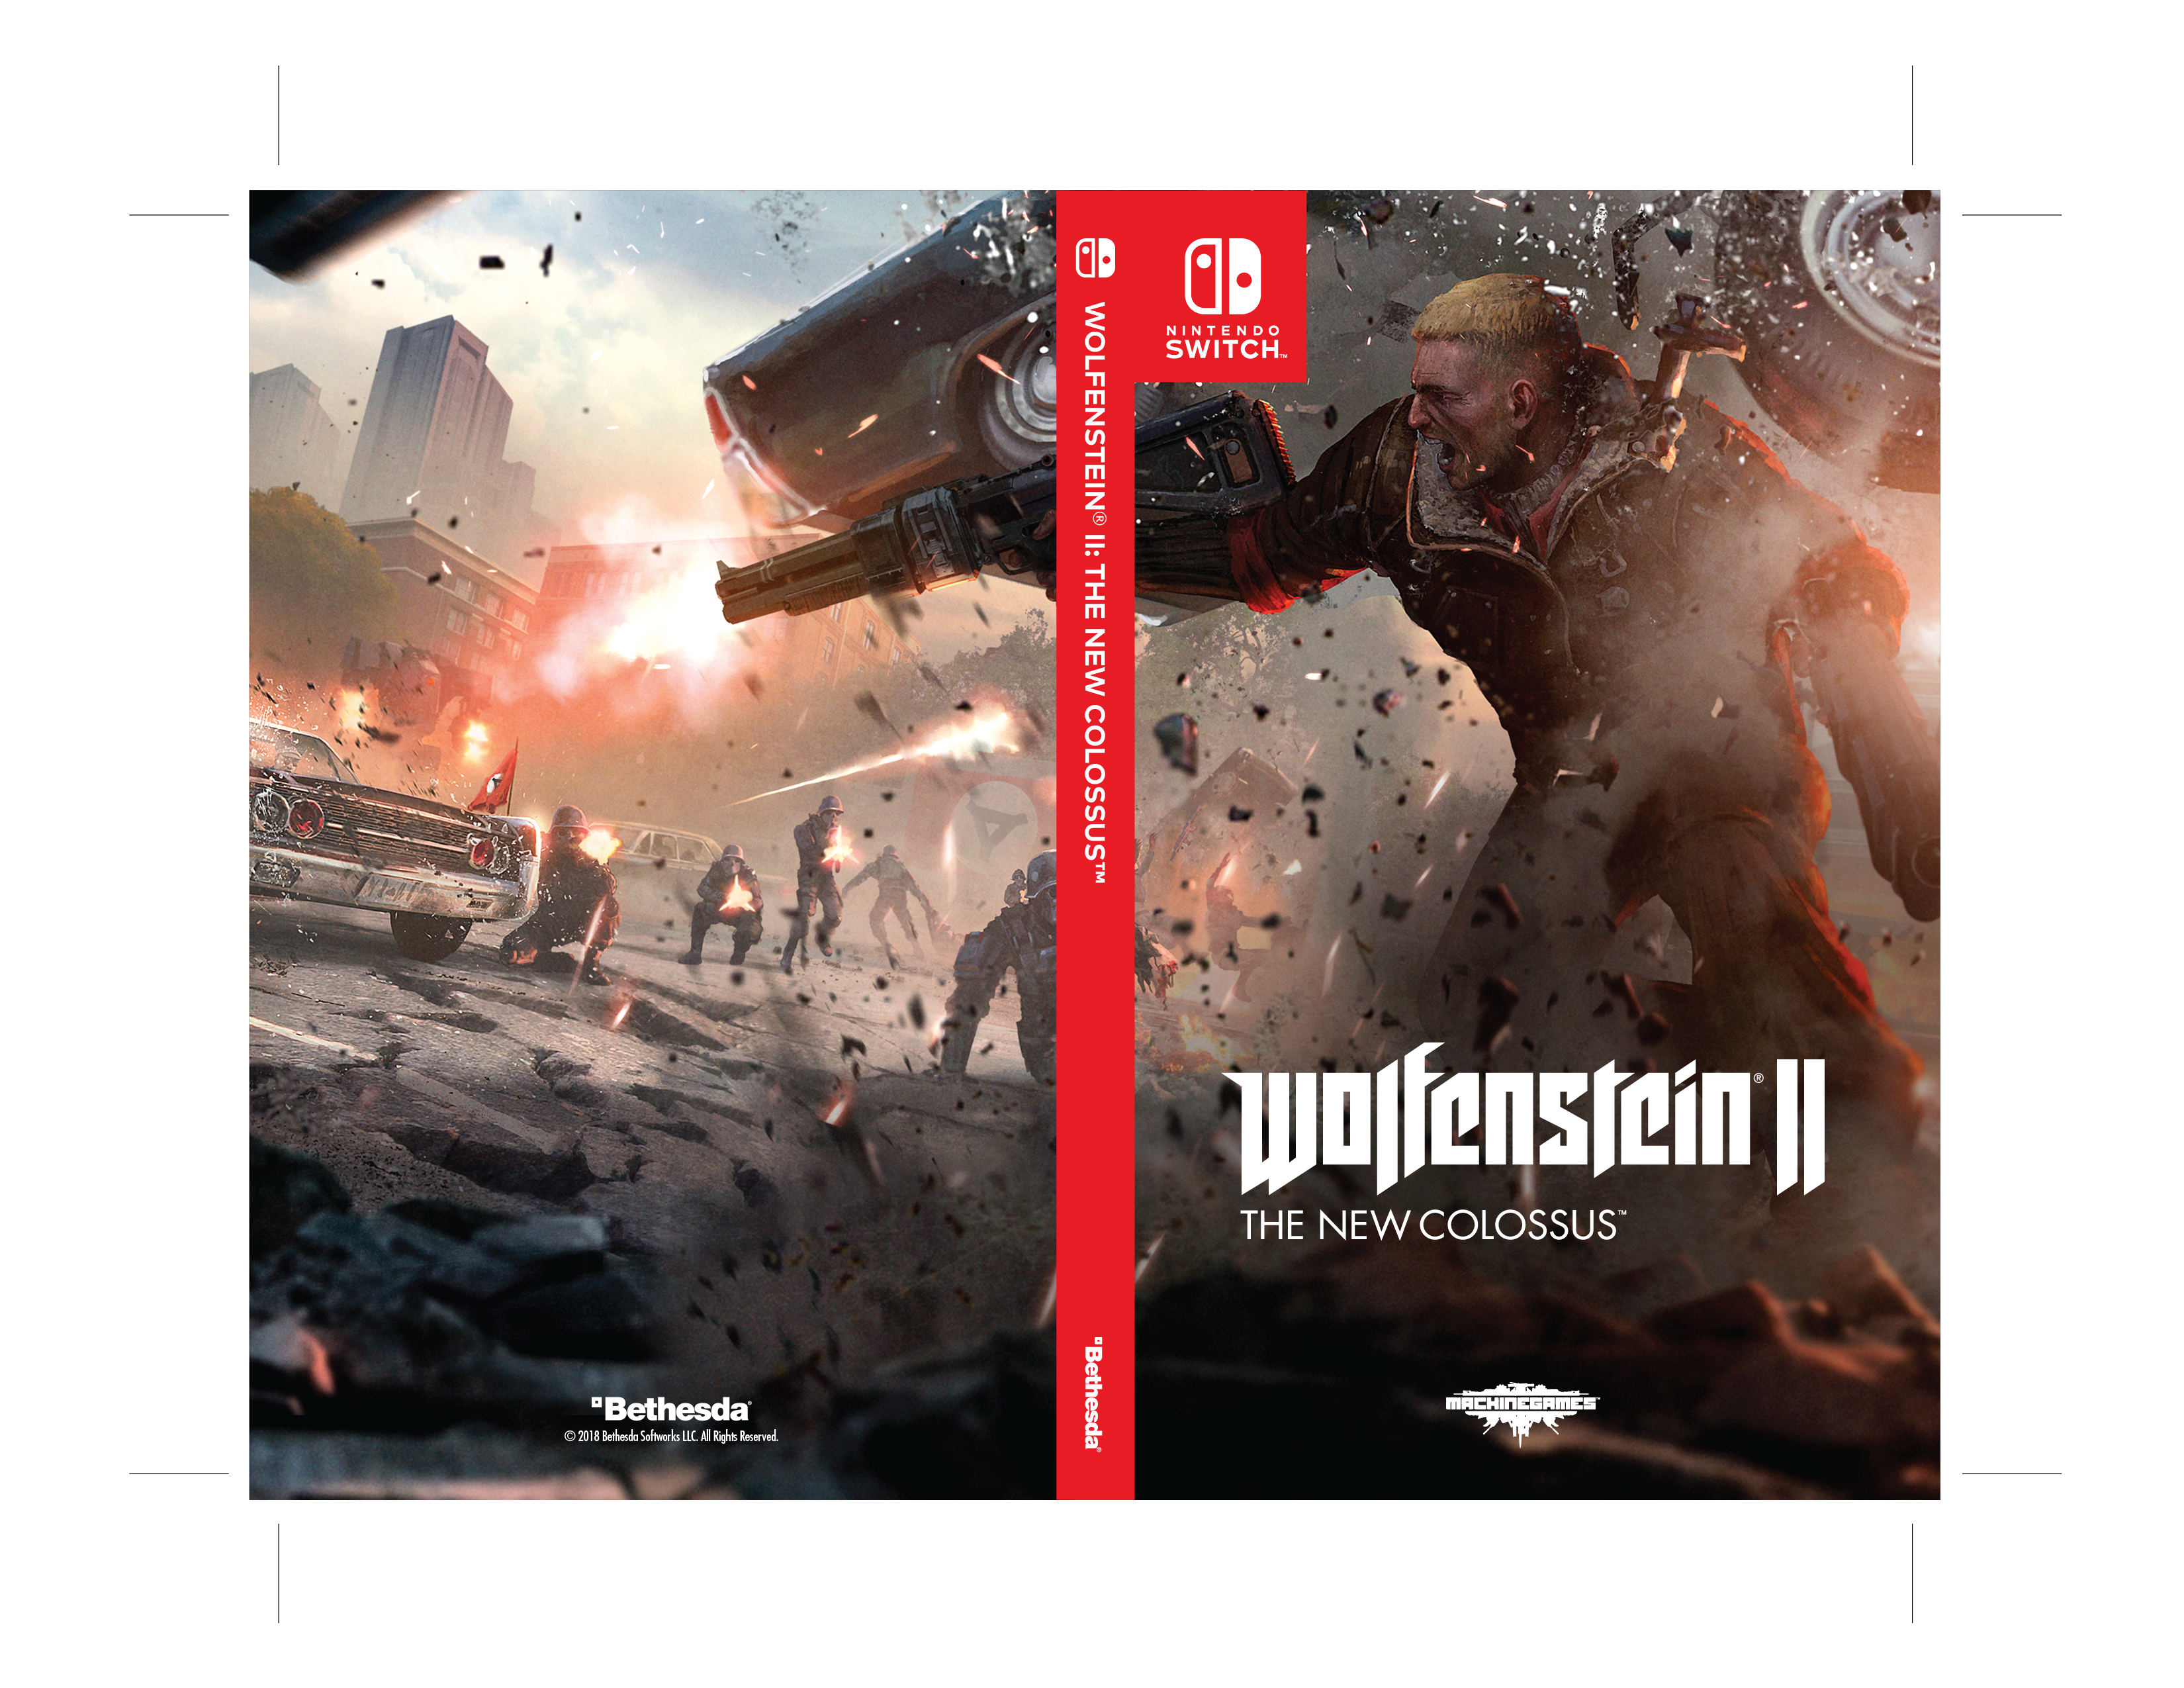 New colossus коды. Wolfenstein II: the New Colossus обложка. Wolfenstein 2 II: the New Colossus обложка. Wolfenstein 2 the New Colossus обложка. Обложки игр Nintendo Switch.